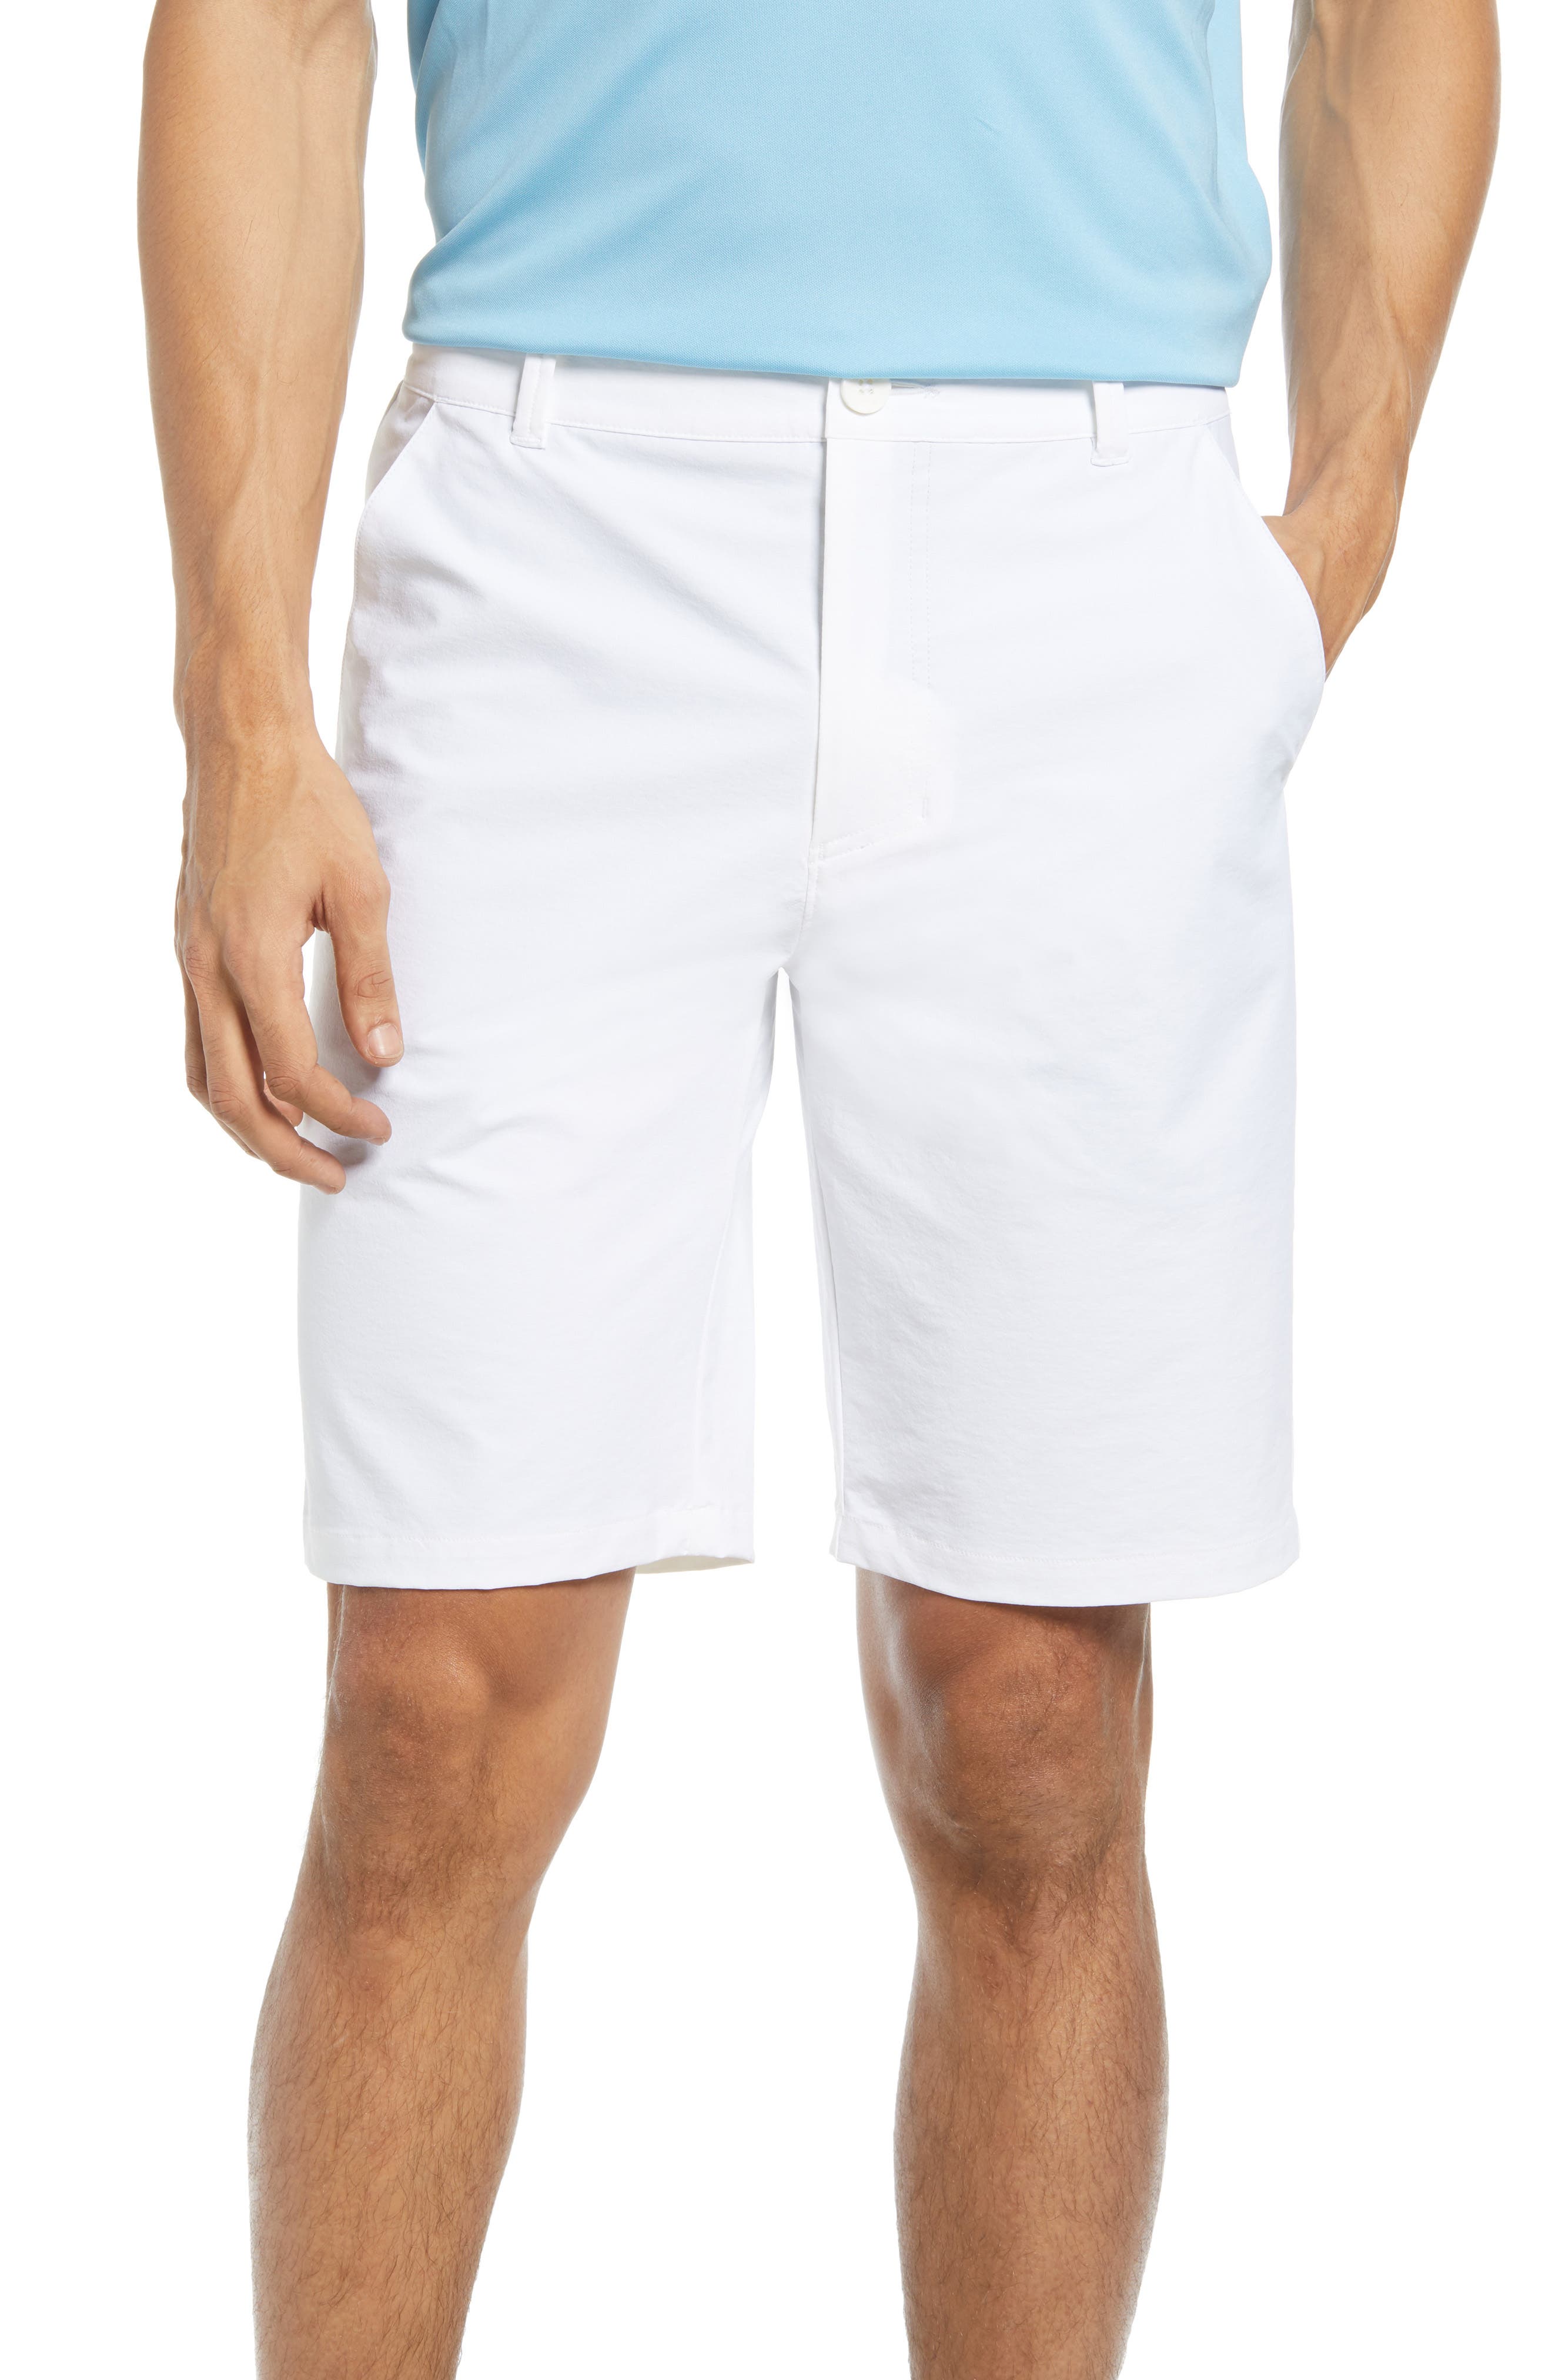 white men's shorts